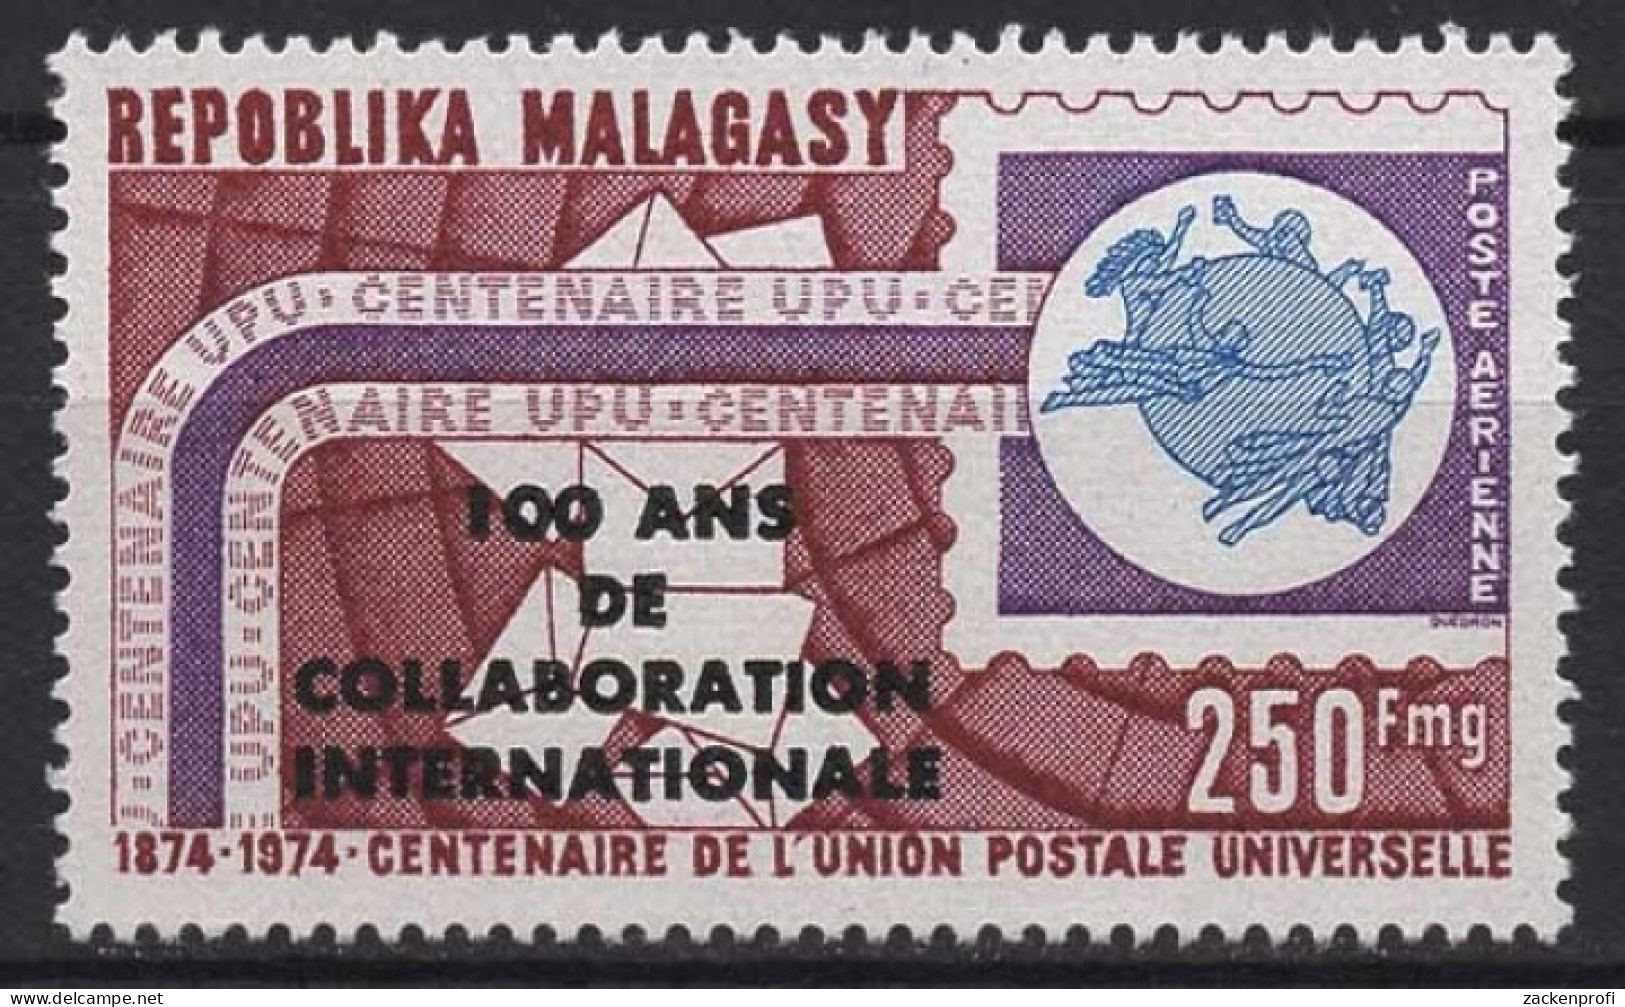 Madagaskar 1974 100 J. Internationale Zusammenarbeit 723 Postfrisch - Madagaskar (1960-...)